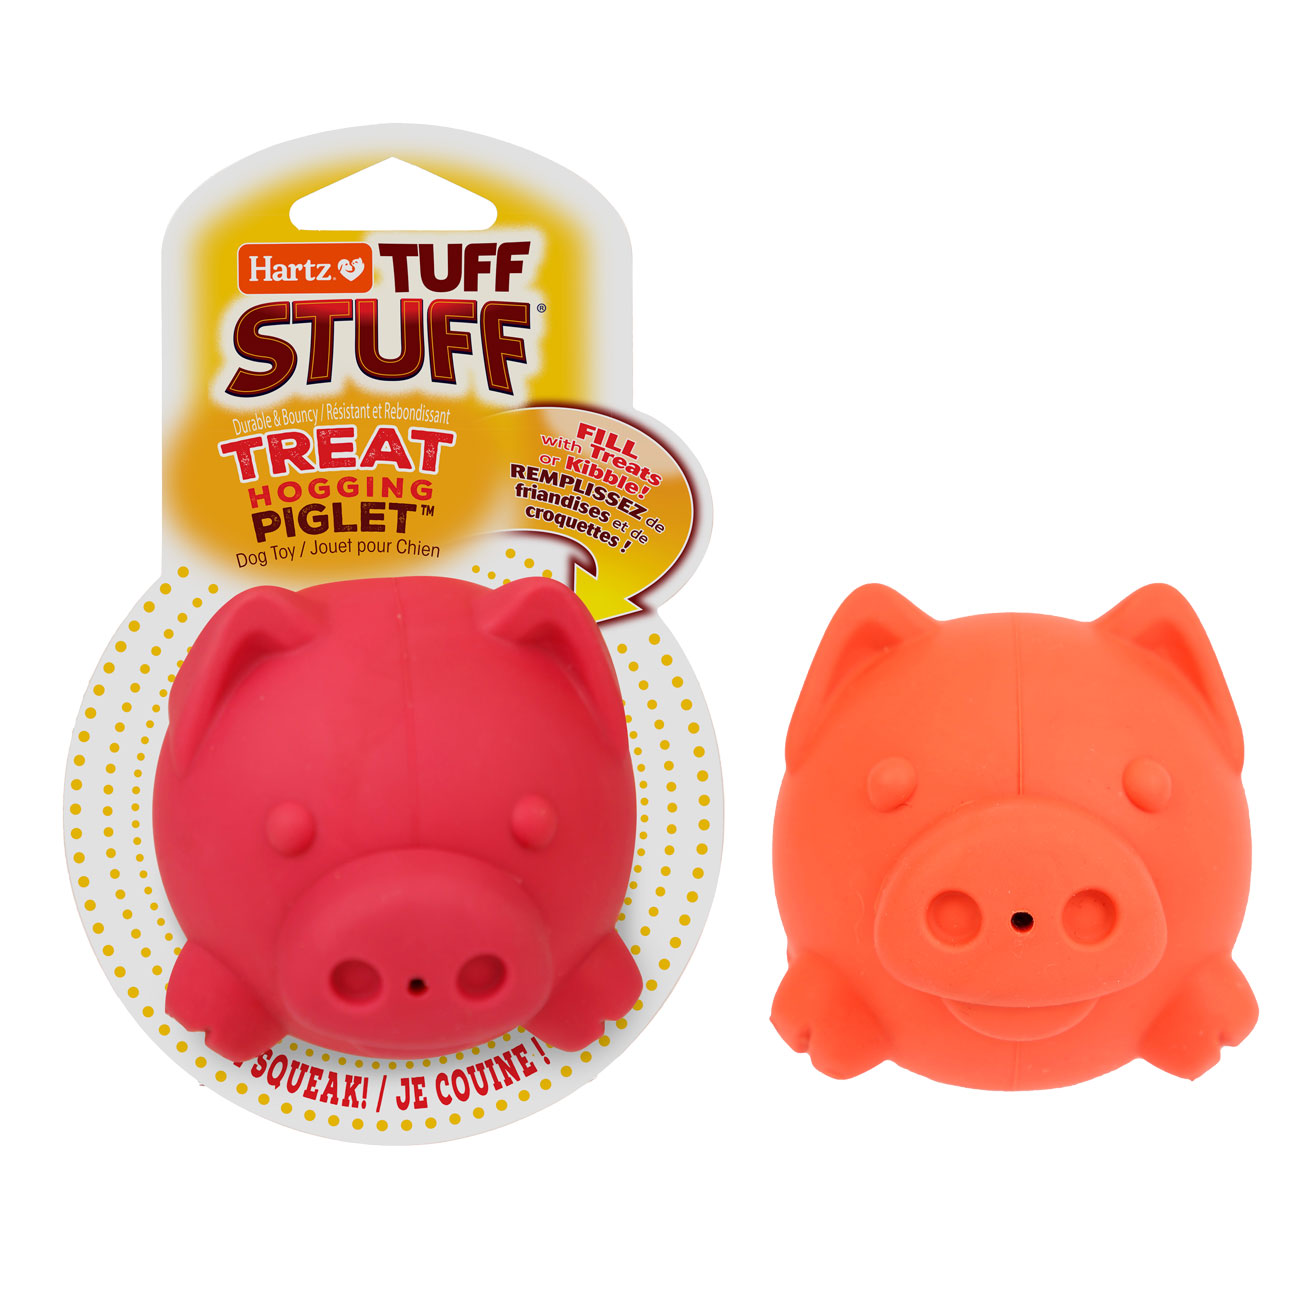 Hartz® Tuff Stuff® Treat Hogging Piglet™